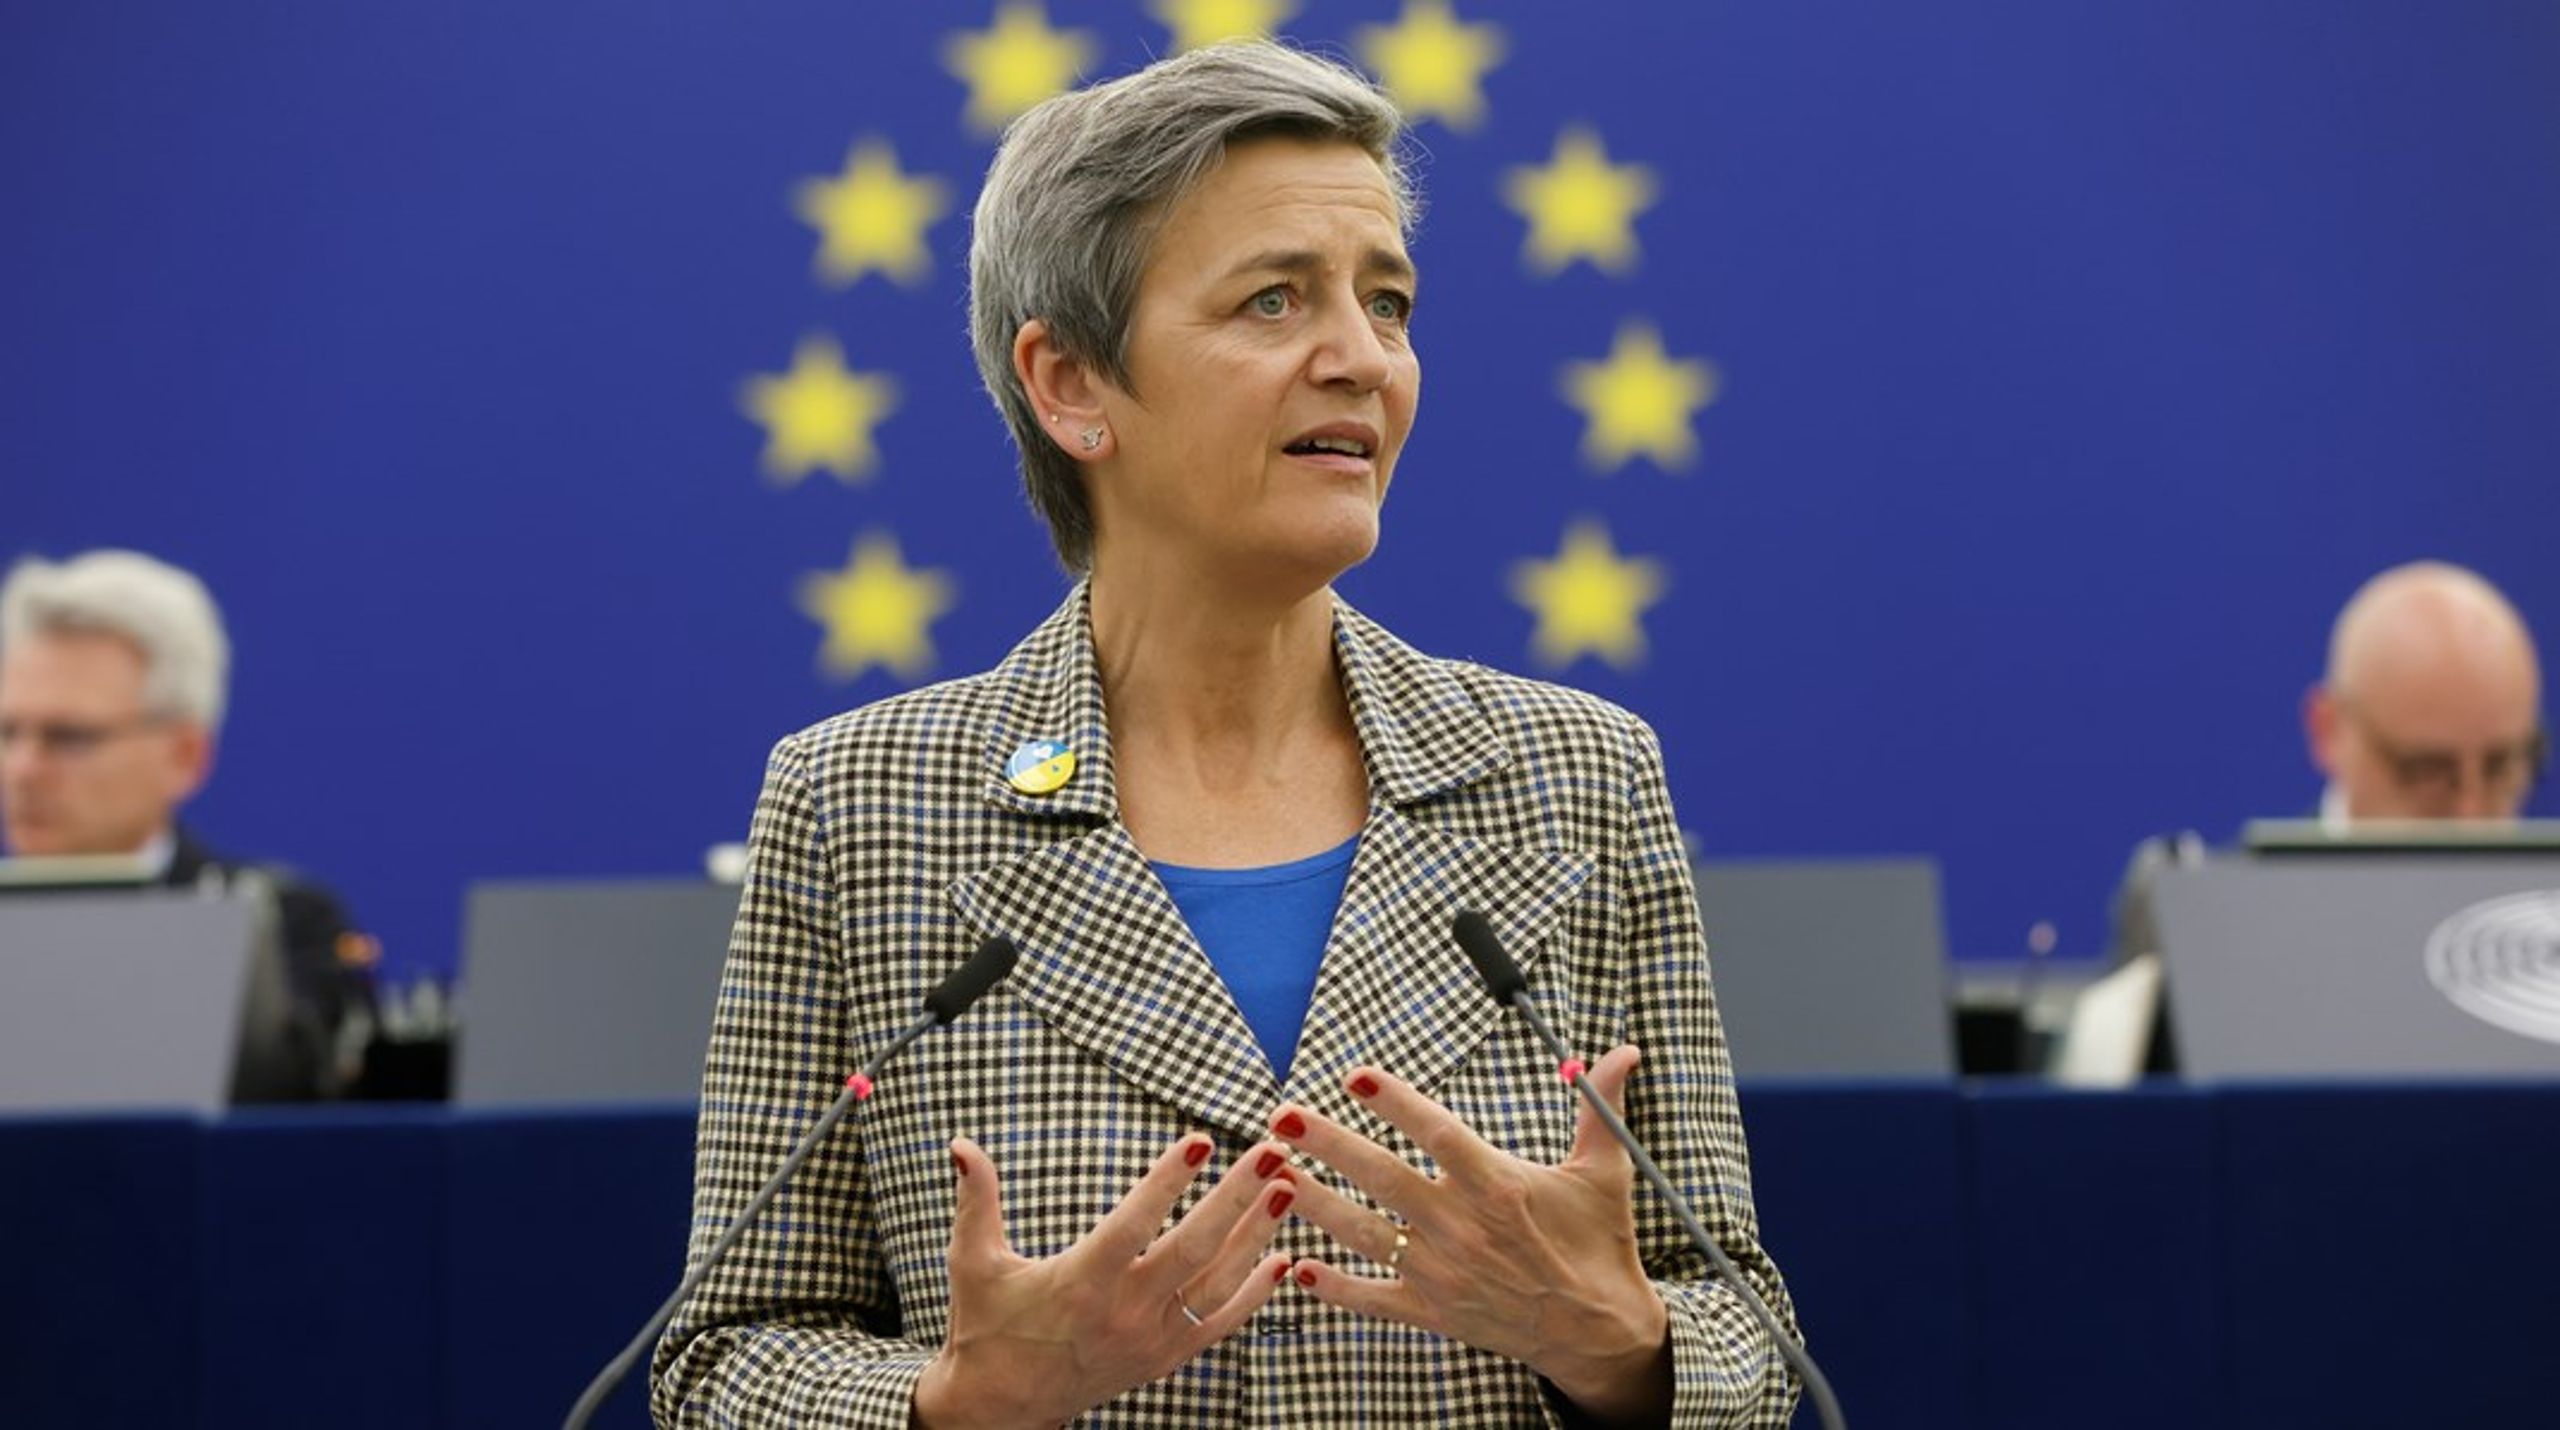 EU-kommissionens strategi handlar inte om att kopiera Nato, förklarade kommissionären Margrethe Vestager.